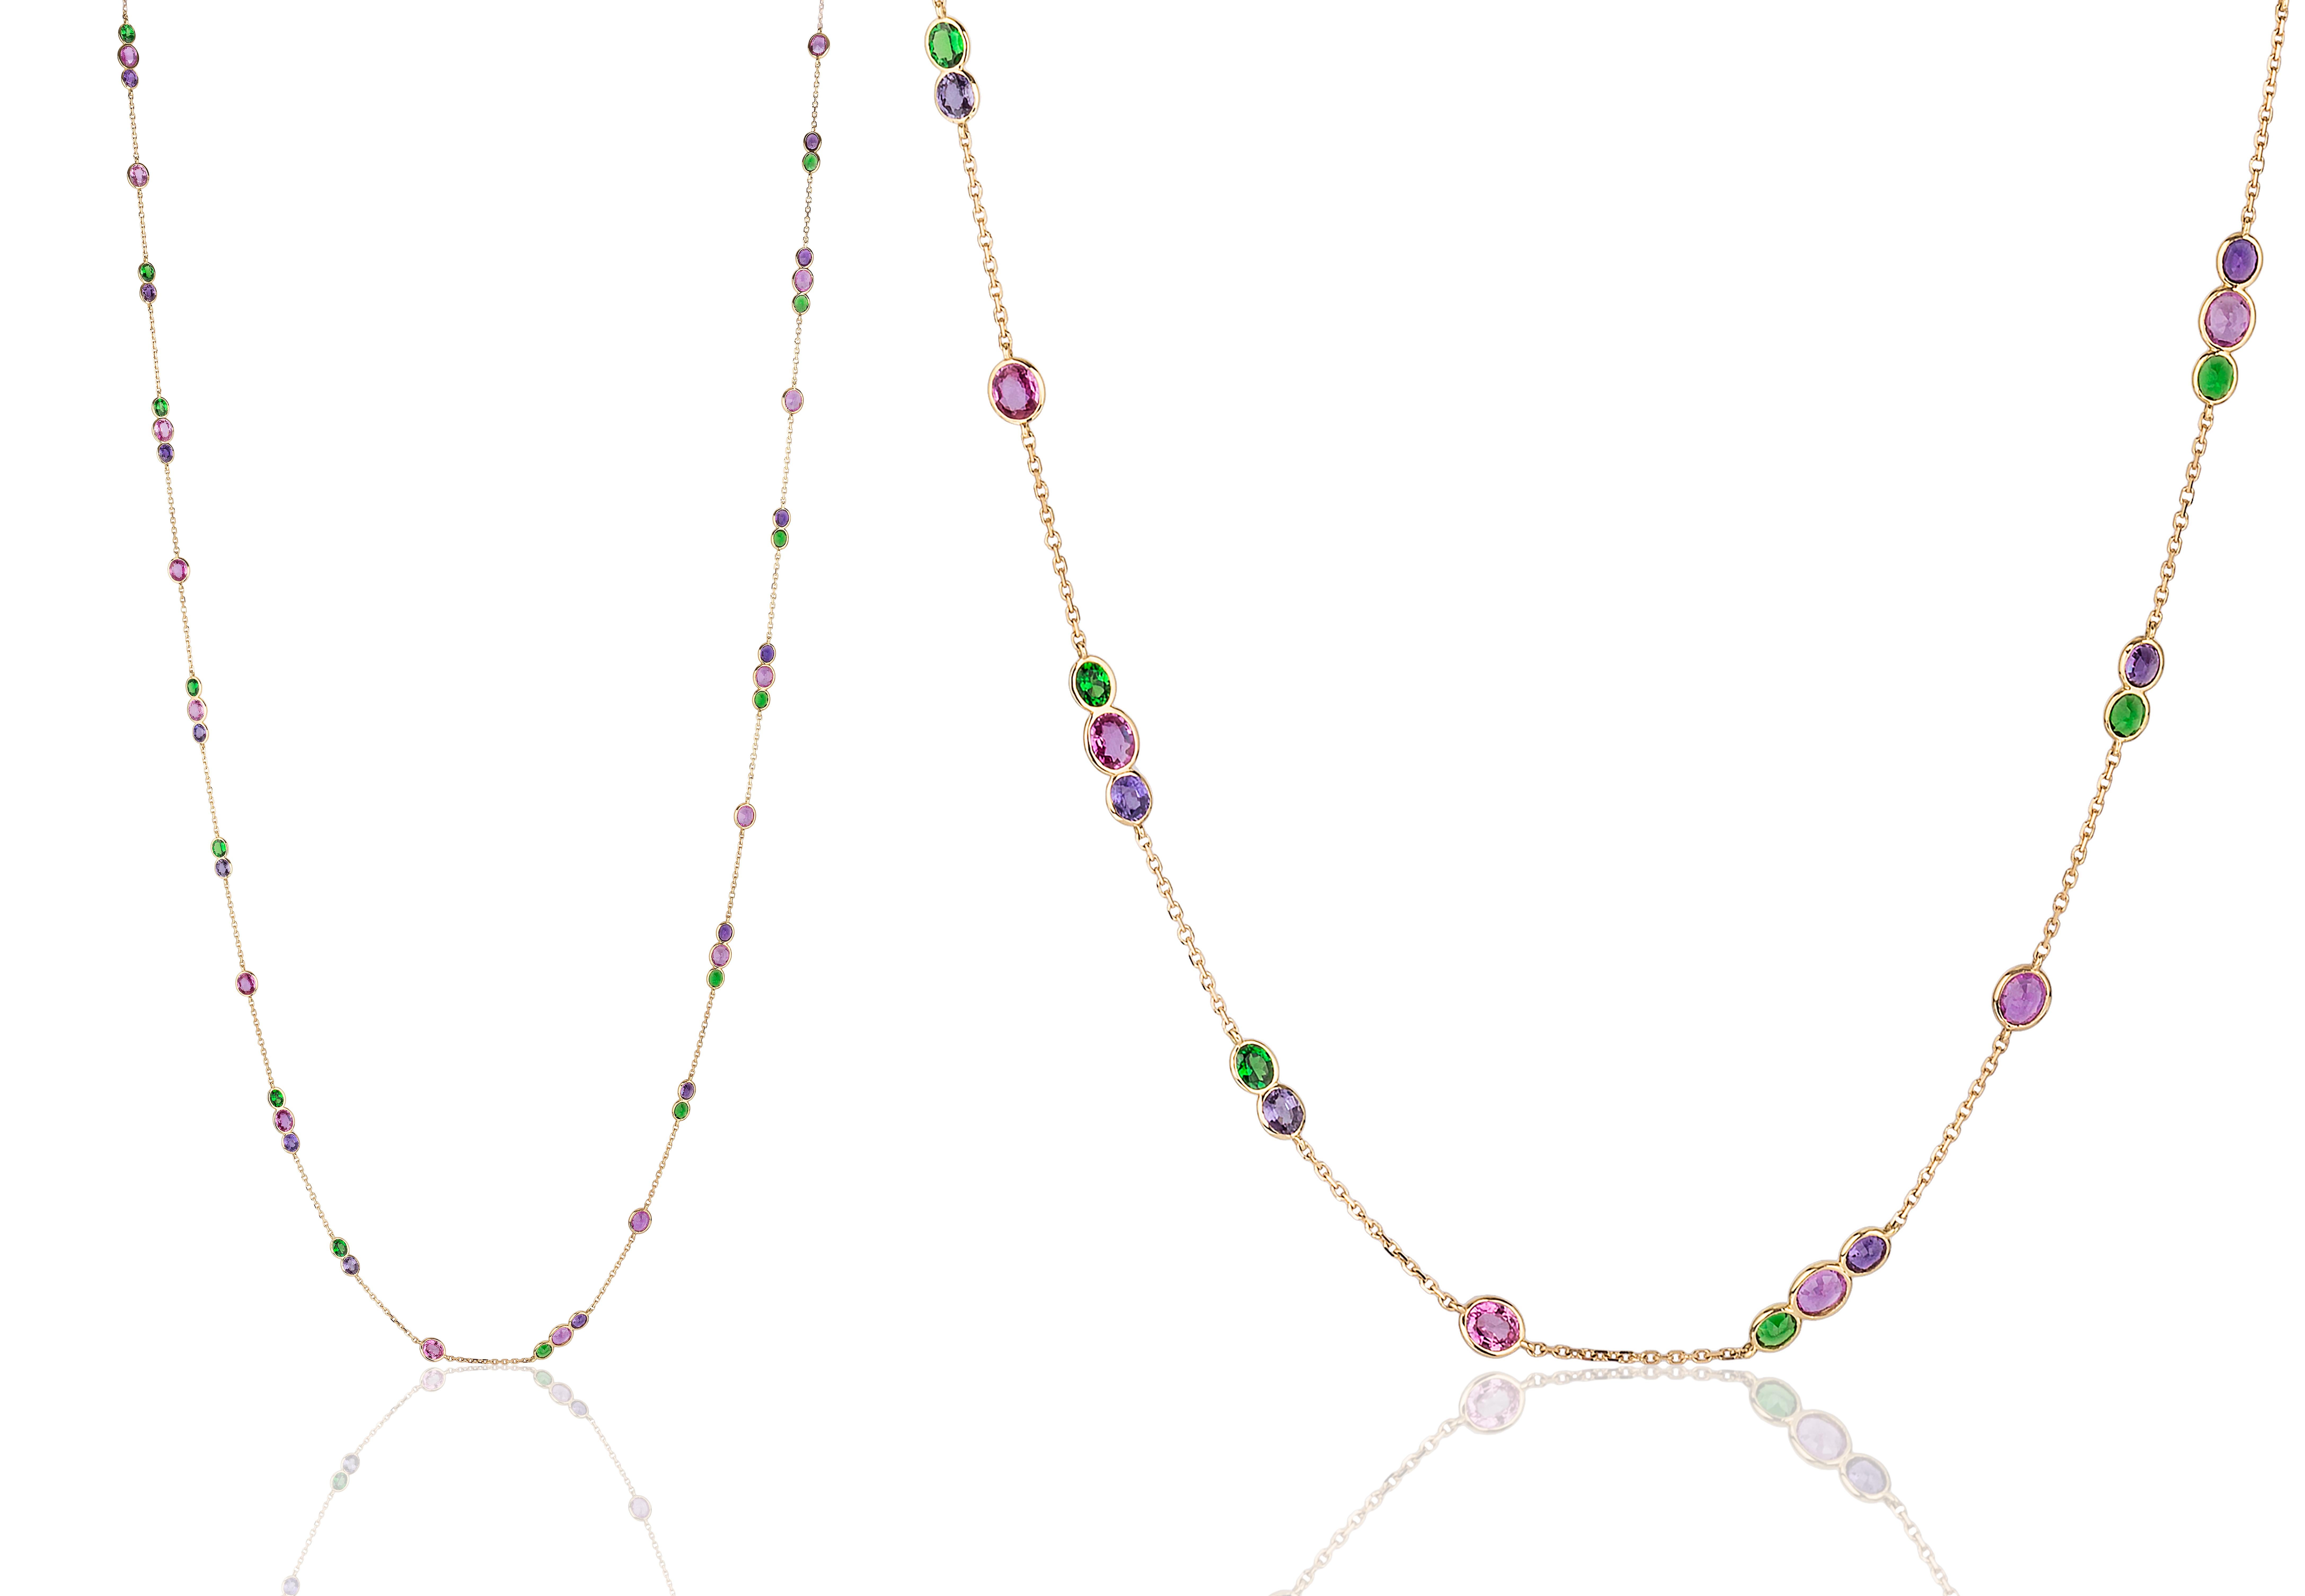 Entdecken Sie diese limitierte Multi-Saphir & Tsavorit-Halskette in elegantem Design aus 18 Karat Gelbgold. Diese Halskette besteht aus einer Kollektion sorgfältig ausgewählter Saphire und Tsavoriten, die die zarte Kette schmücken. Seine raffinierte